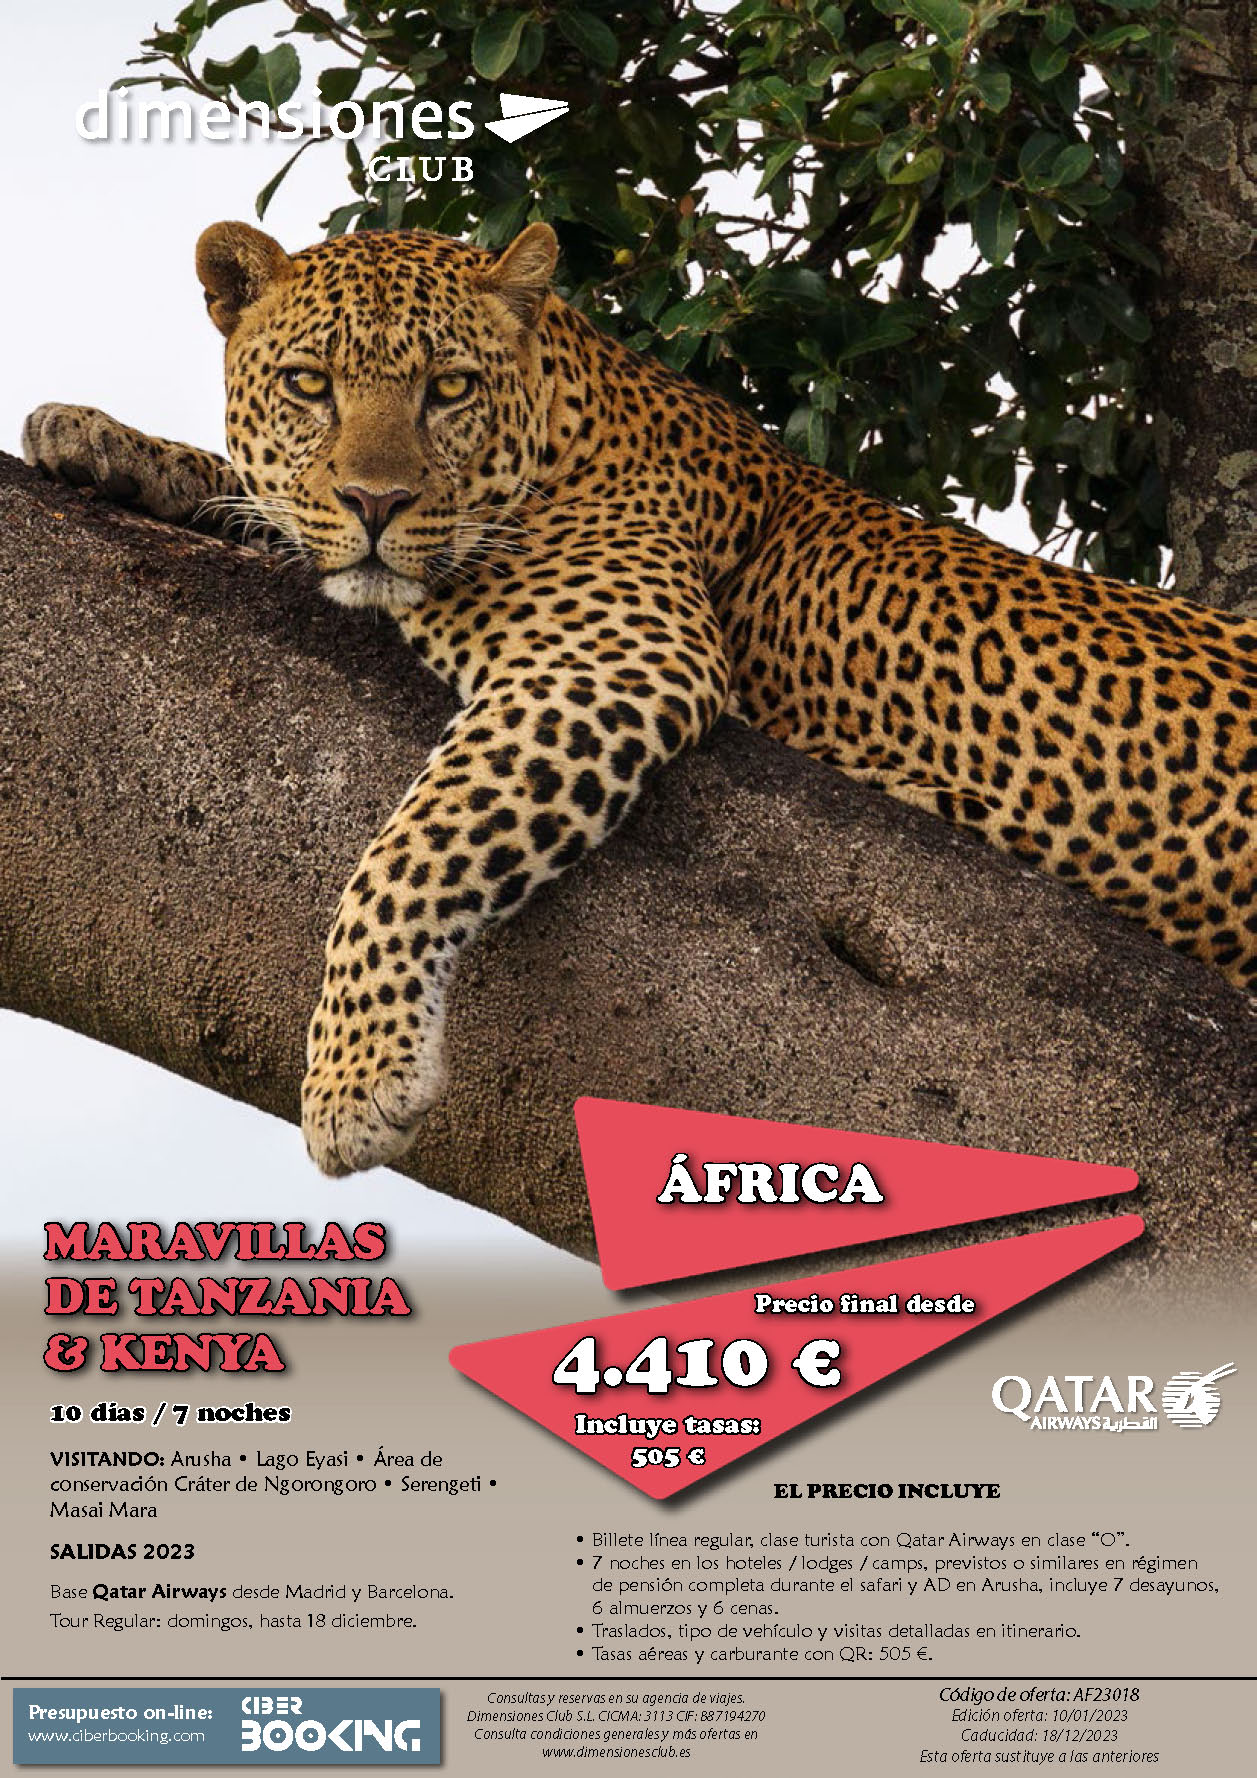 Oferta Dimensiones Club Maravillas de Tanzania y Kenia 2023 10 dias salidas desde Madrid y Barcelona vuelos Qatar Airways